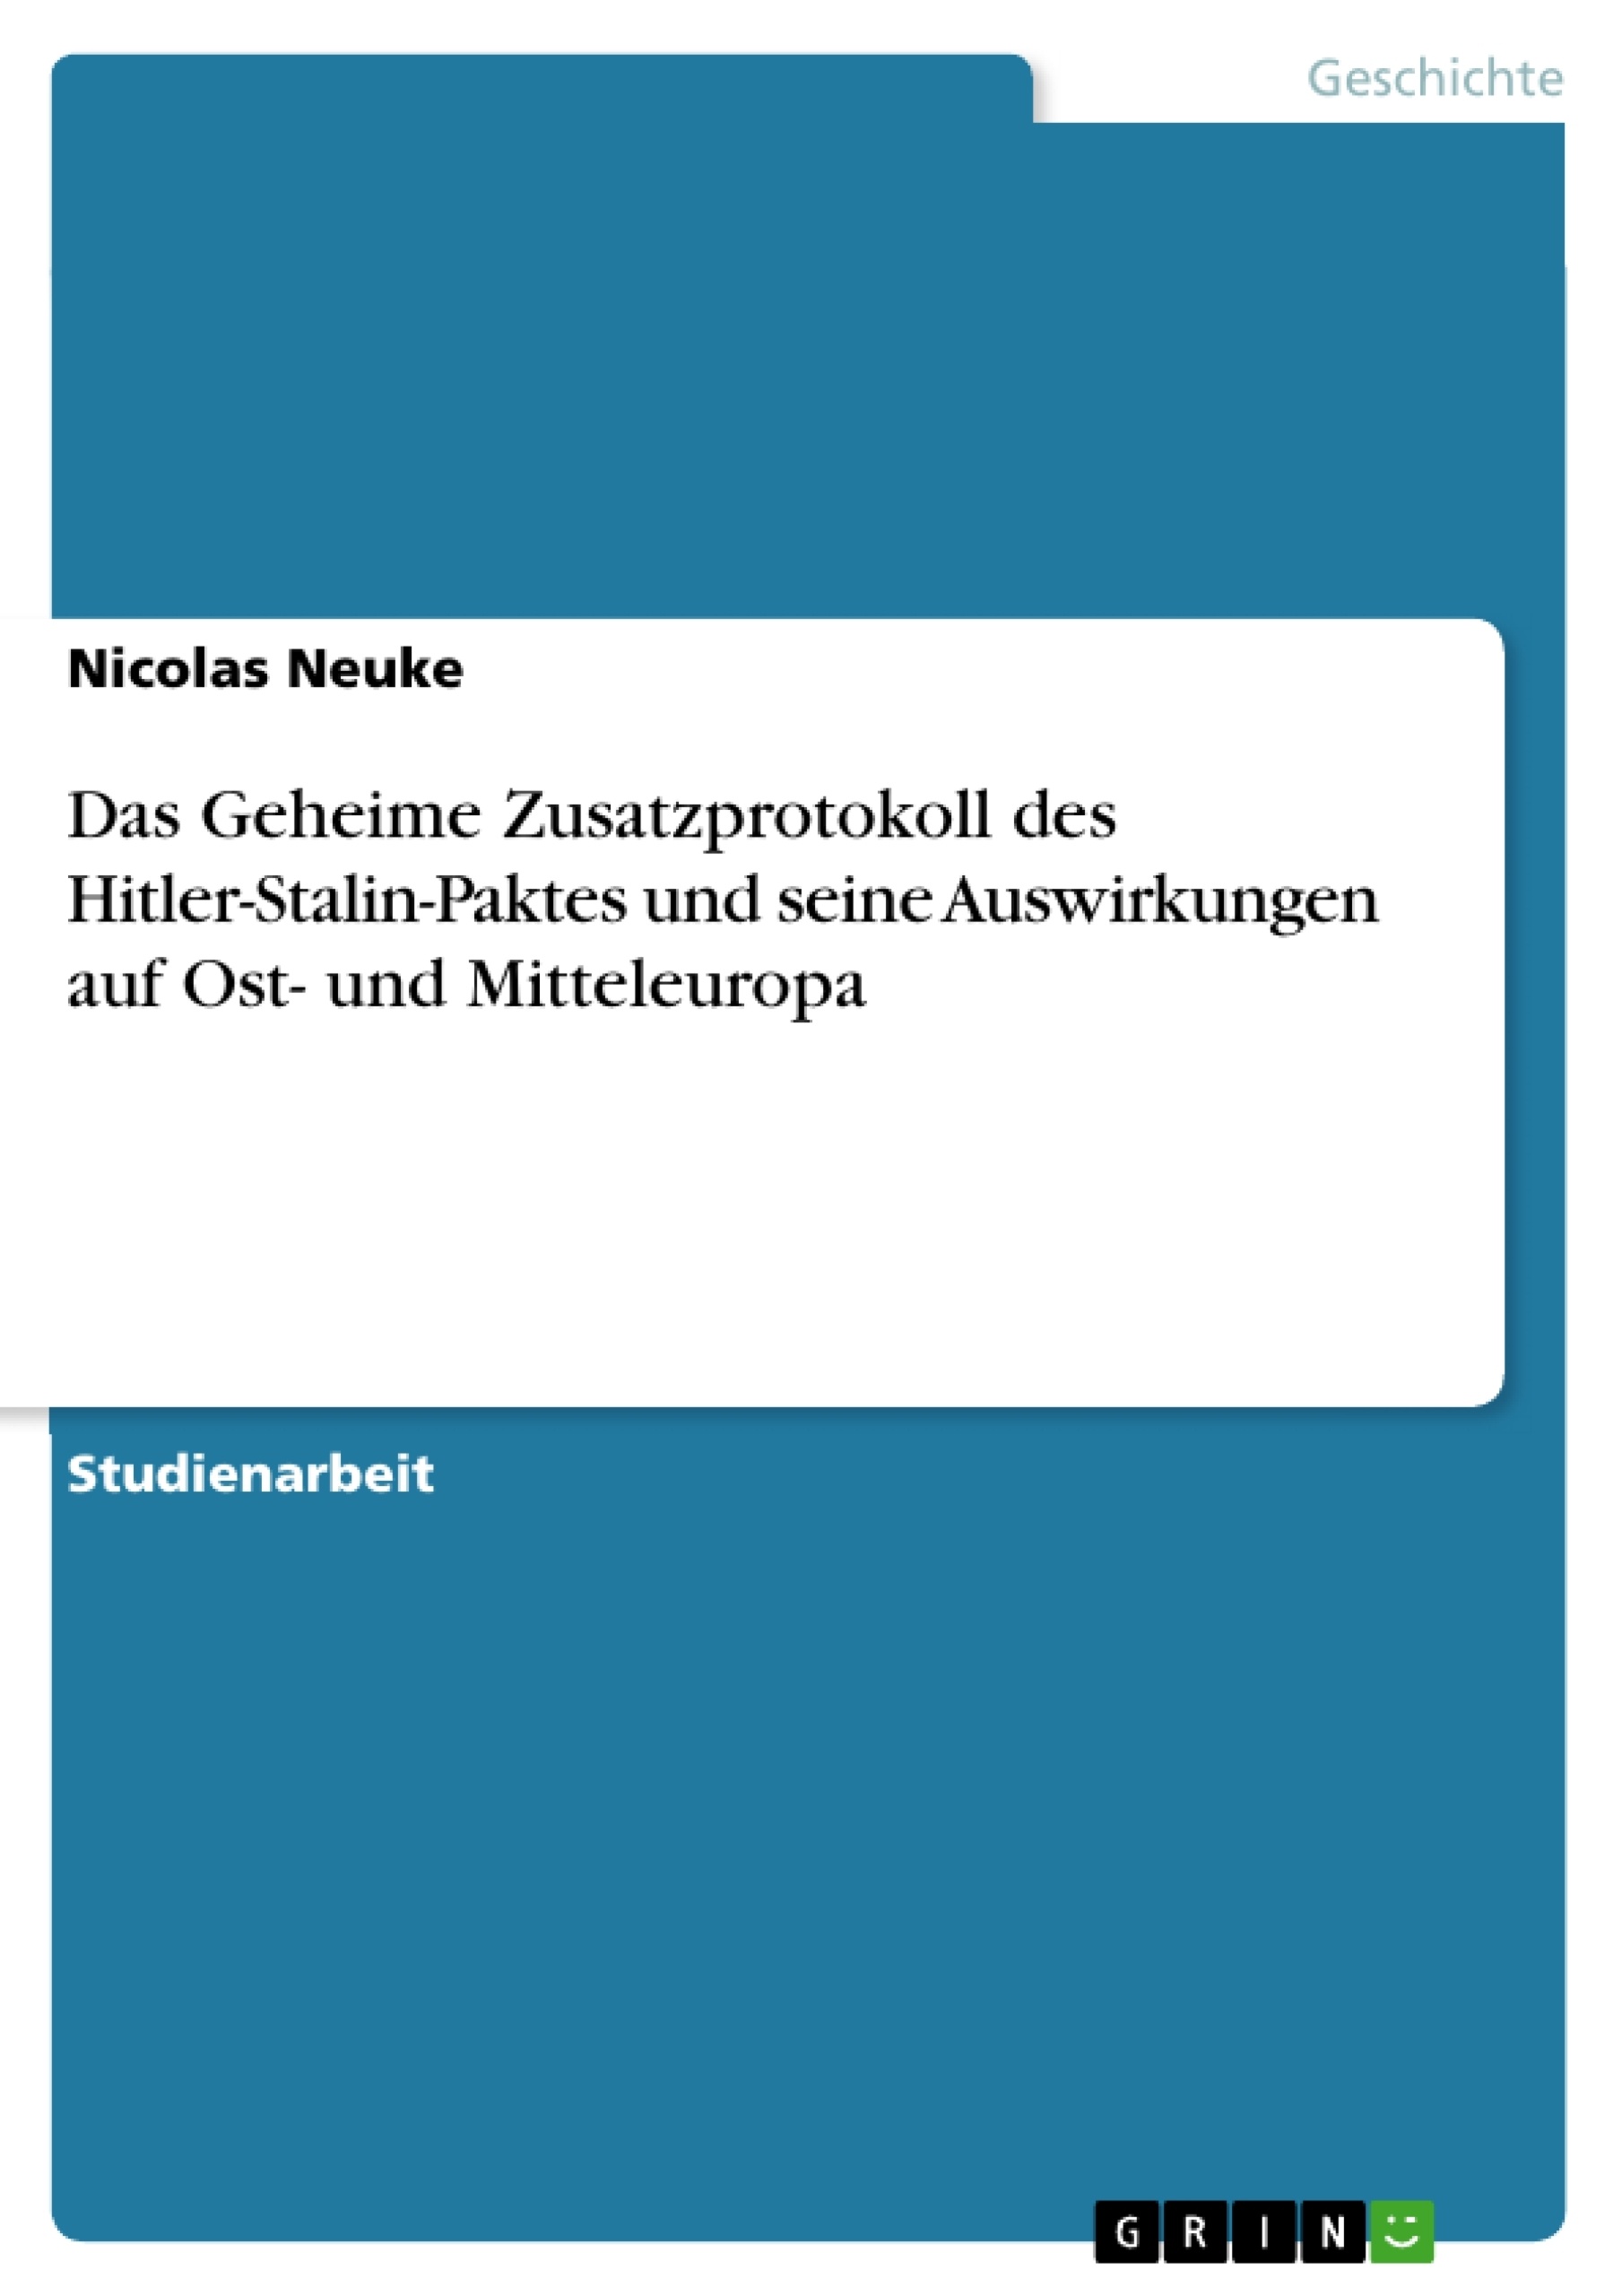 Título: Das Geheime Zusatzprotokoll des Hitler-Stalin-Paktes und seine Auswirkungen auf Ost- und Mitteleuropa